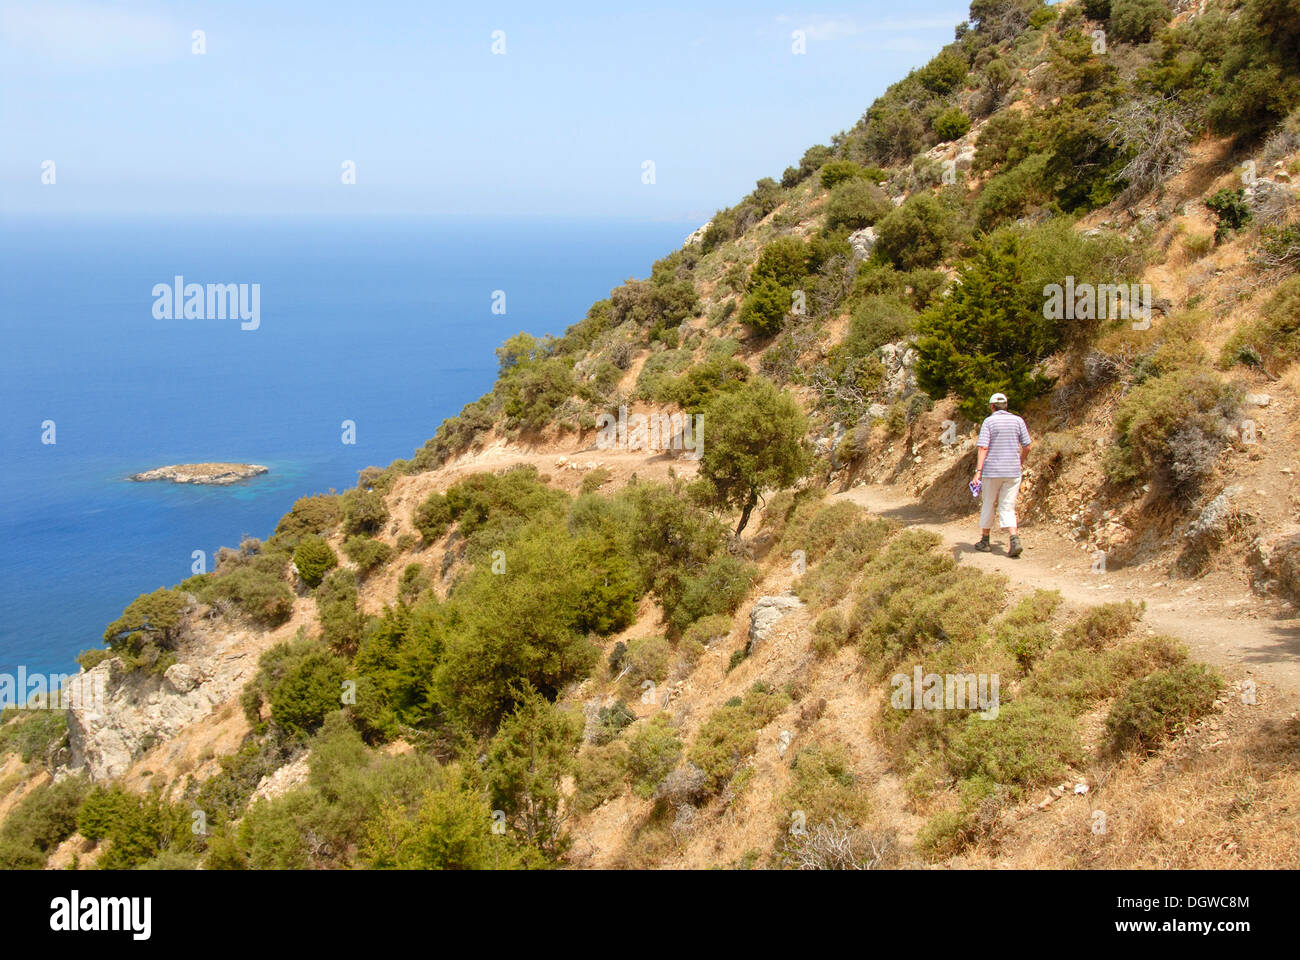 Frau auf einem steilen Felsen der Küste Weg wandern mit Blick auf eine Insel und das blaue Meer von Moutti Tis Sotiras absteigend Stockfoto